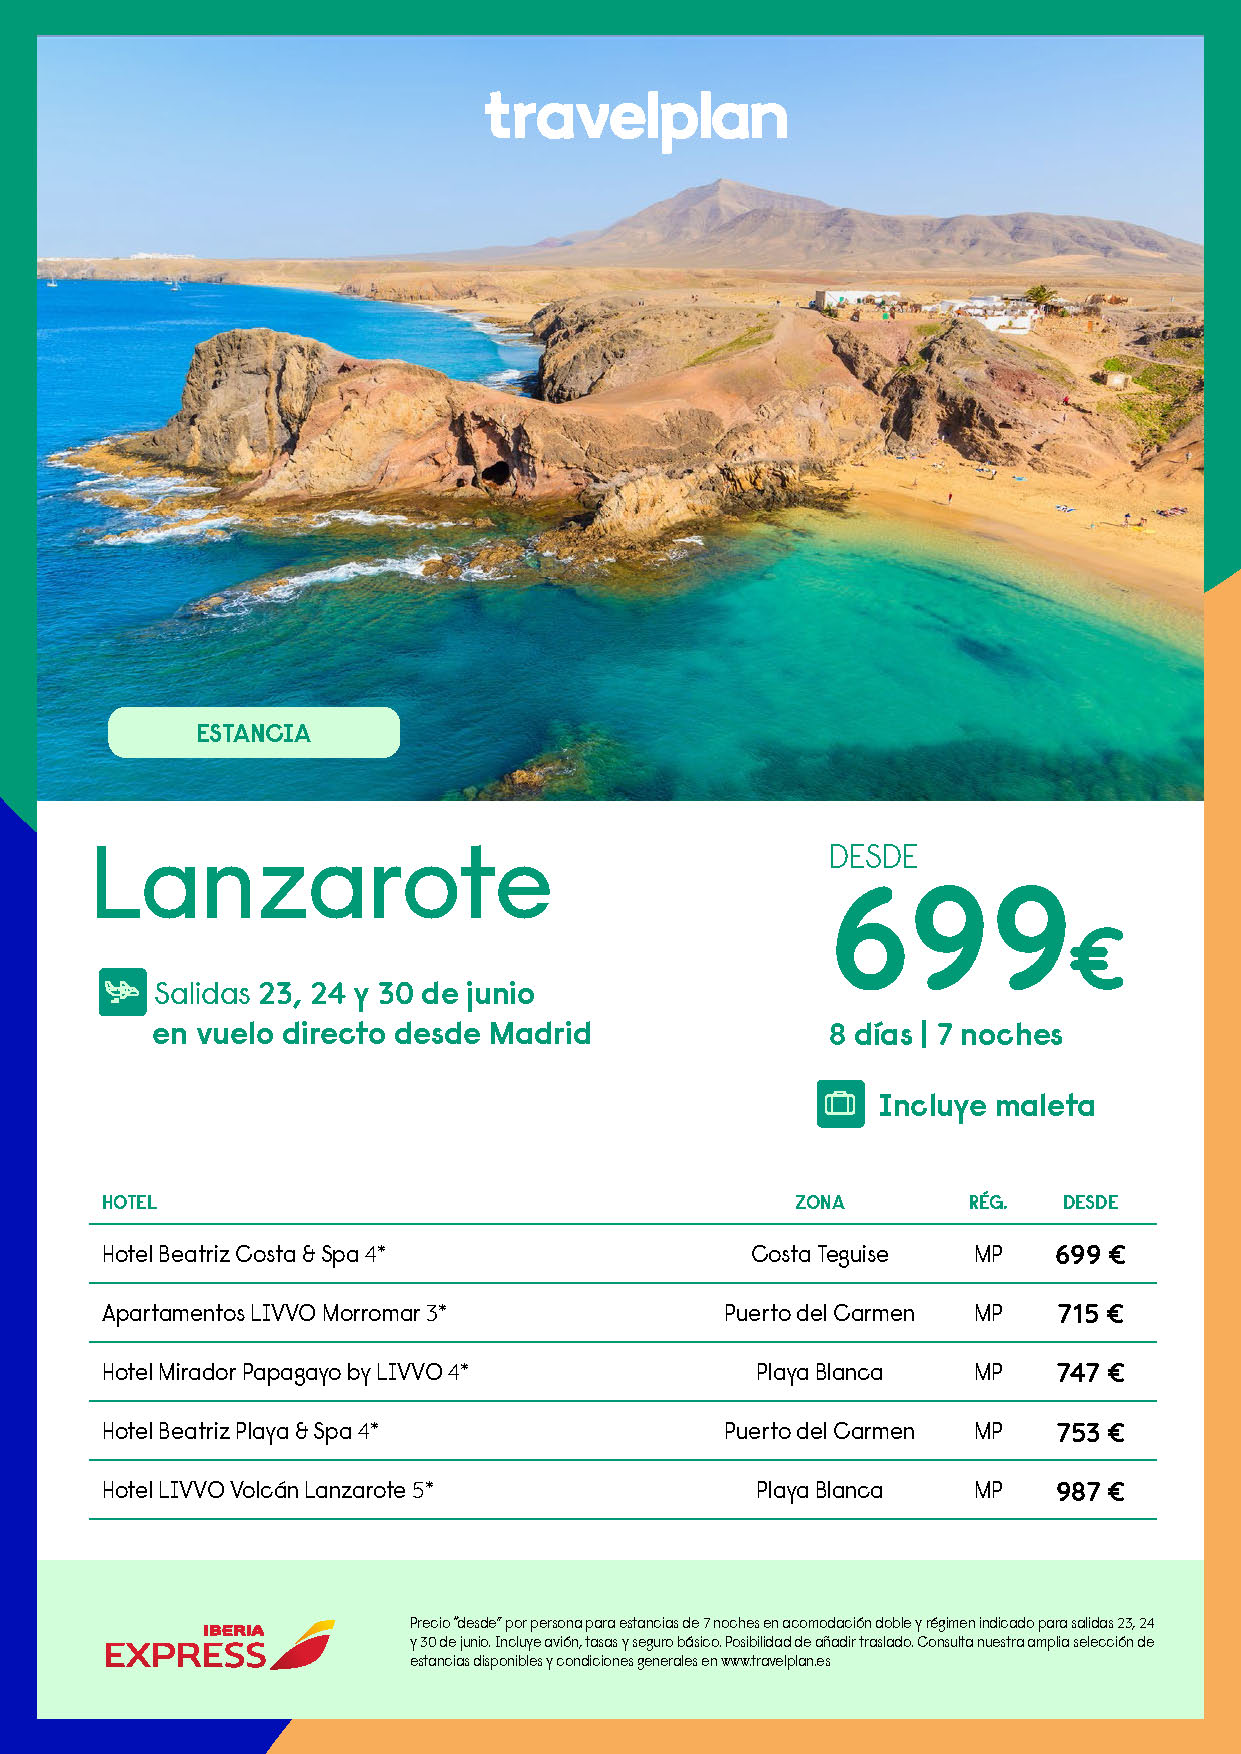 Oferta Travelplan Estancia en Lanzarote 8 dias Todo Incluido salida 23 24 30 junio vuelo directo desde Madrid